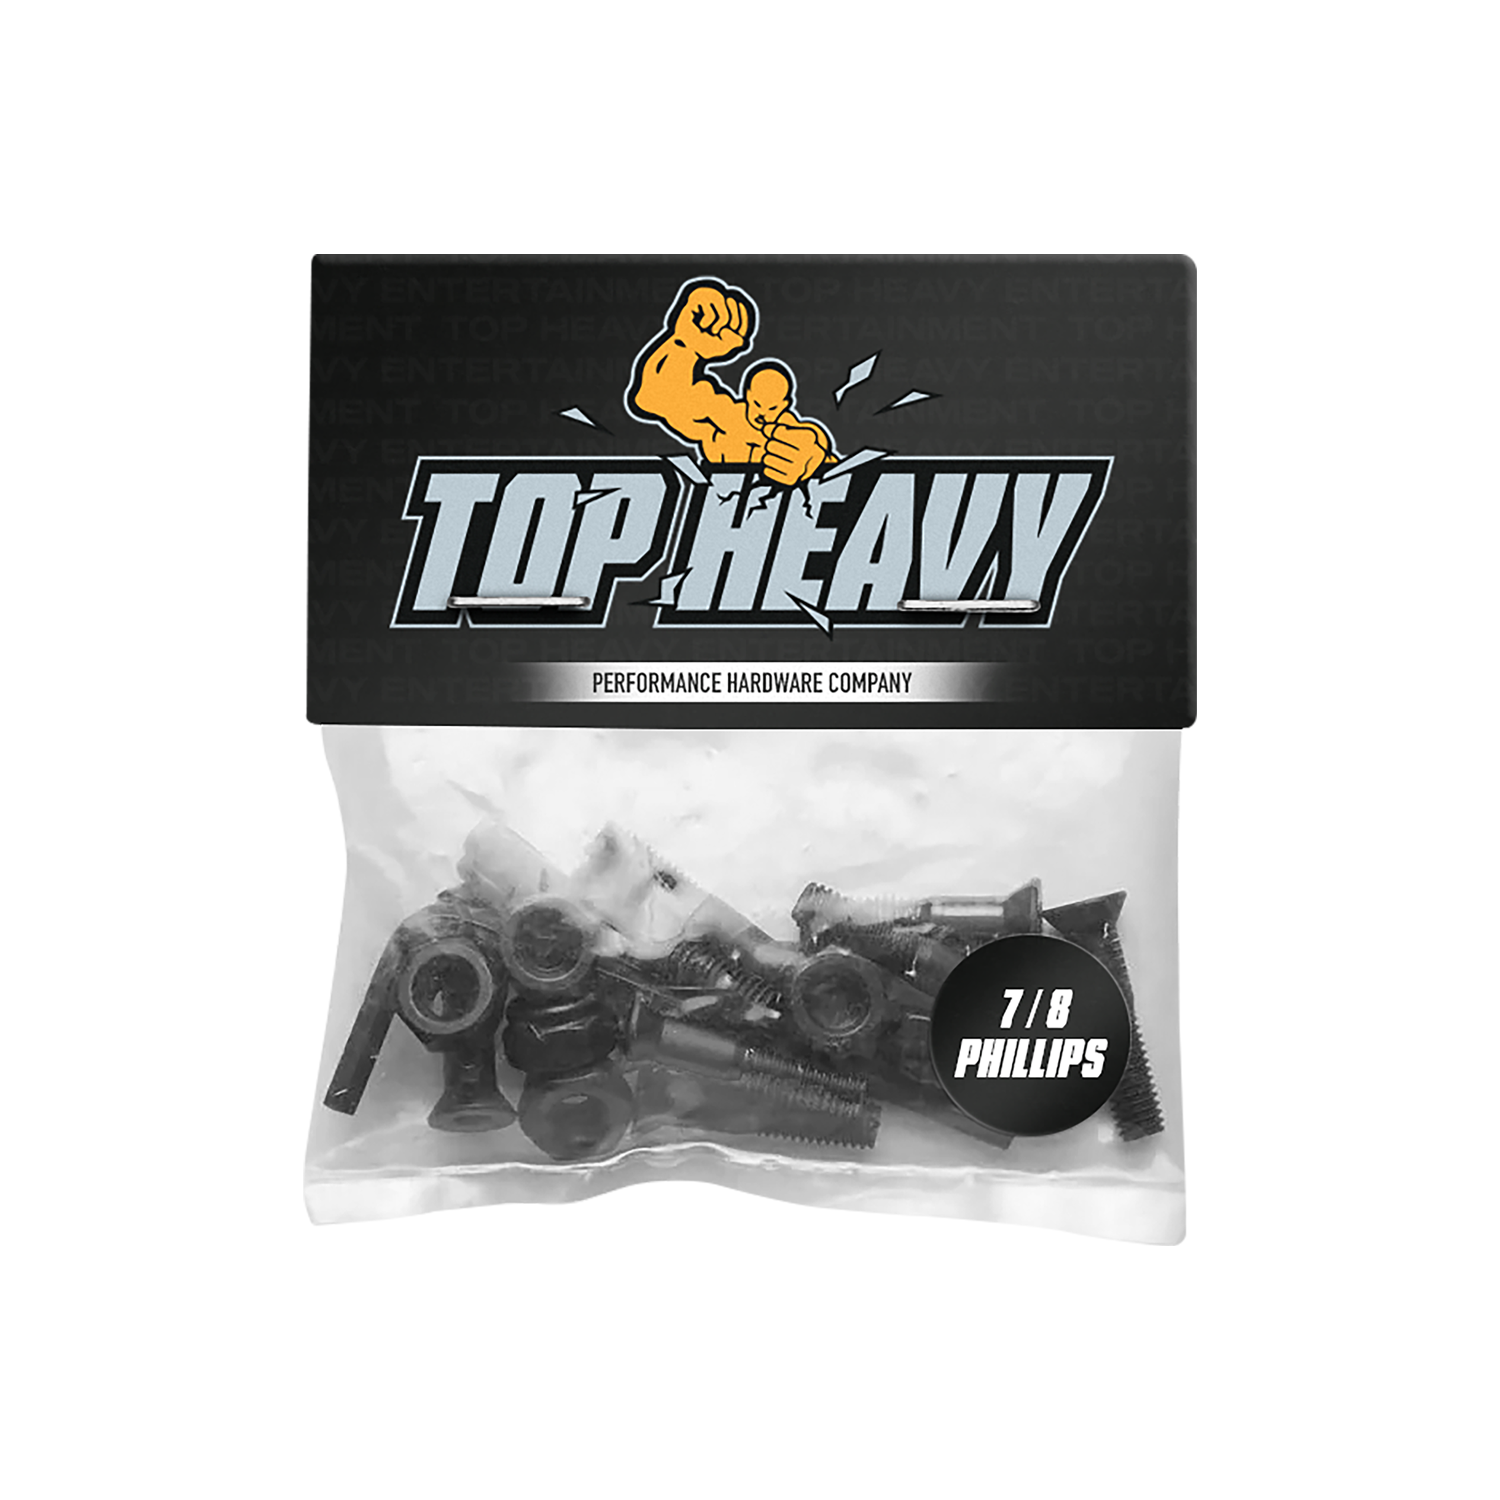 Heavy Hardware 7/8 Phillips - TopHeavyEntertainment